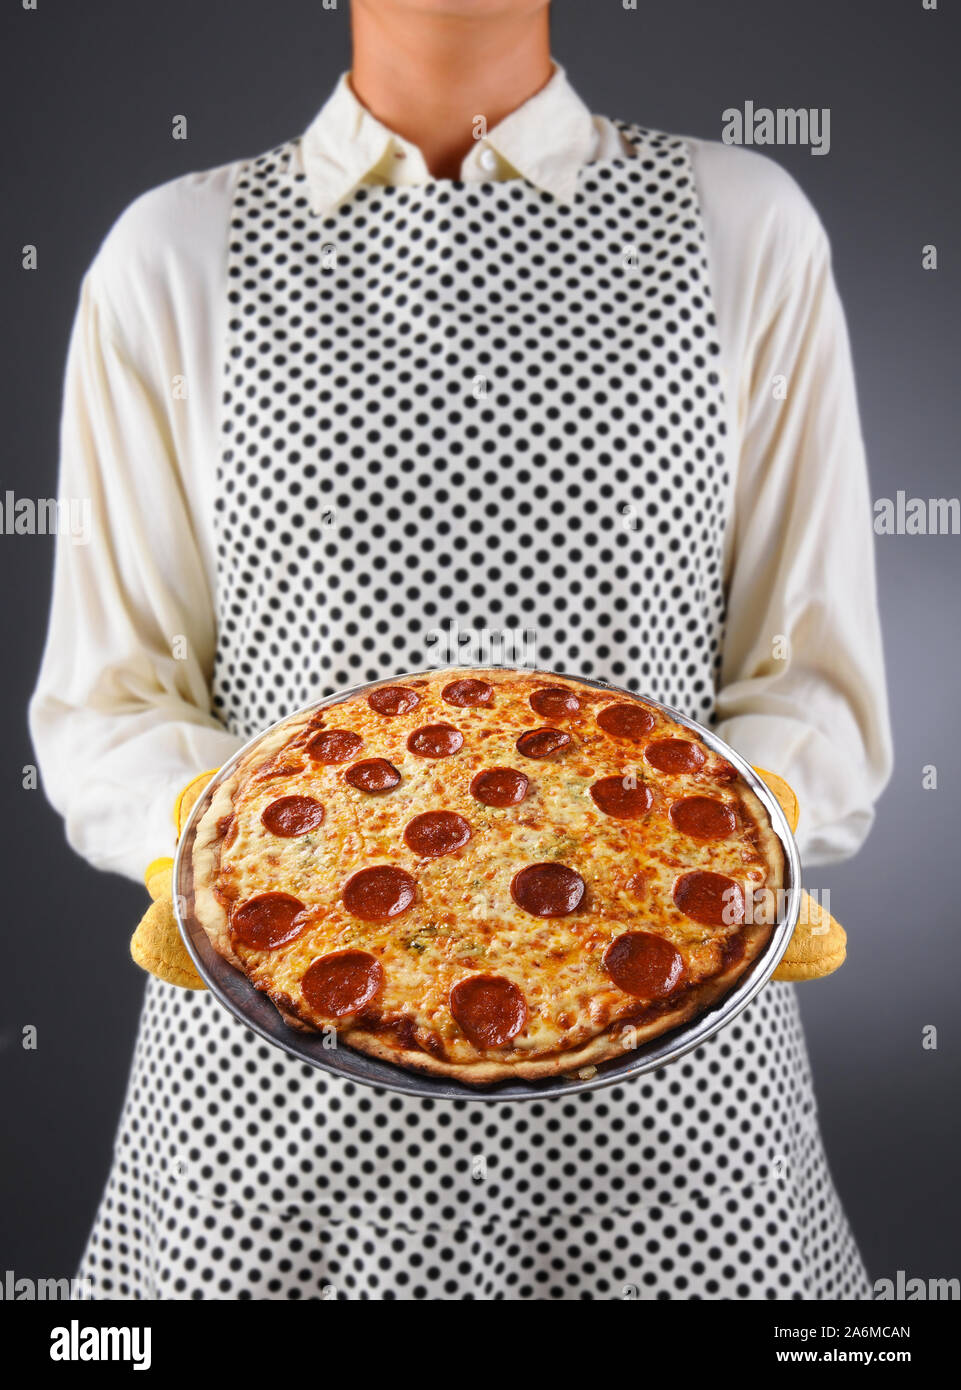 Primer plano de un ama de casa en un delantal y manoplas mantiene fresca pizza casera. La mujer es irreconocible. Foto de stock